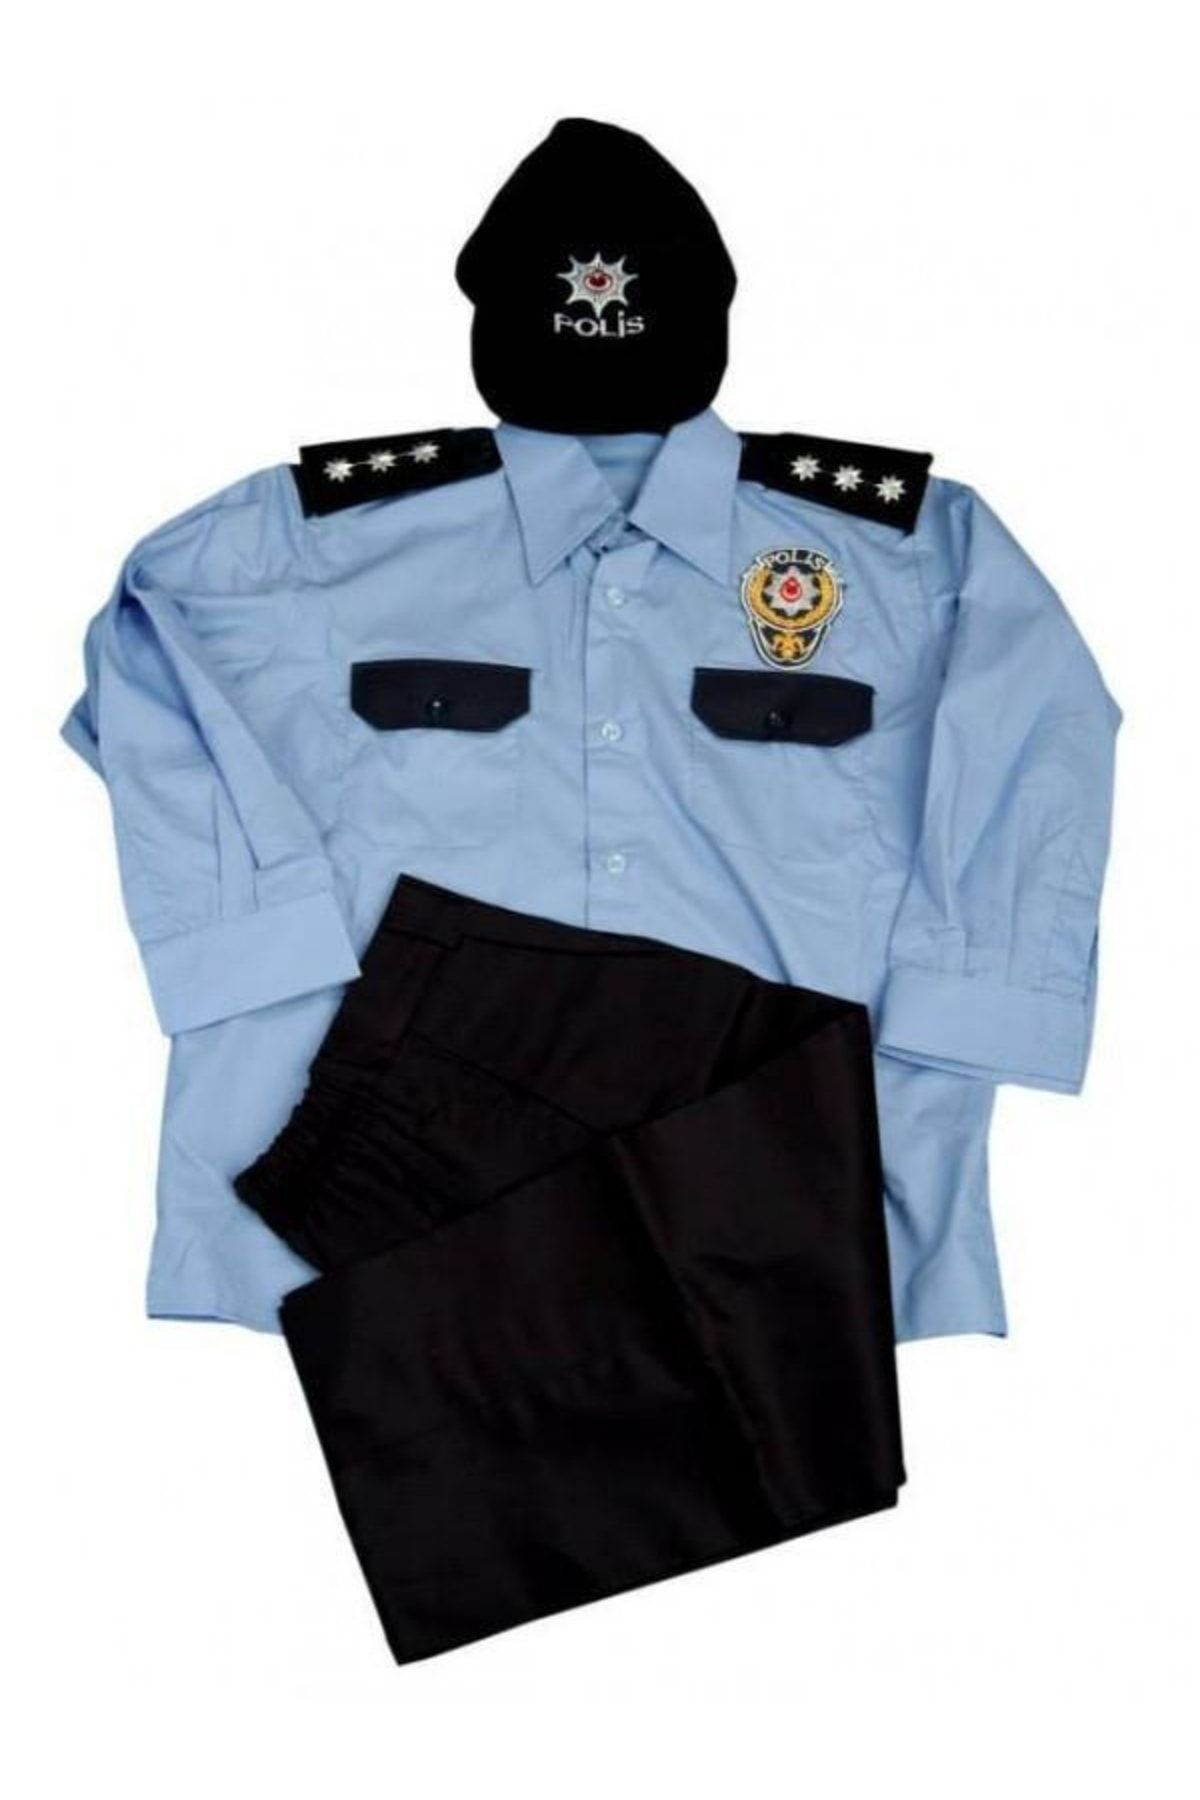 BURAK ASKERİ MALZEME Uzun Kollu Mavi Renkli Unisex Sapkali Polis Cocuk Kiyafet Kostum Takimi